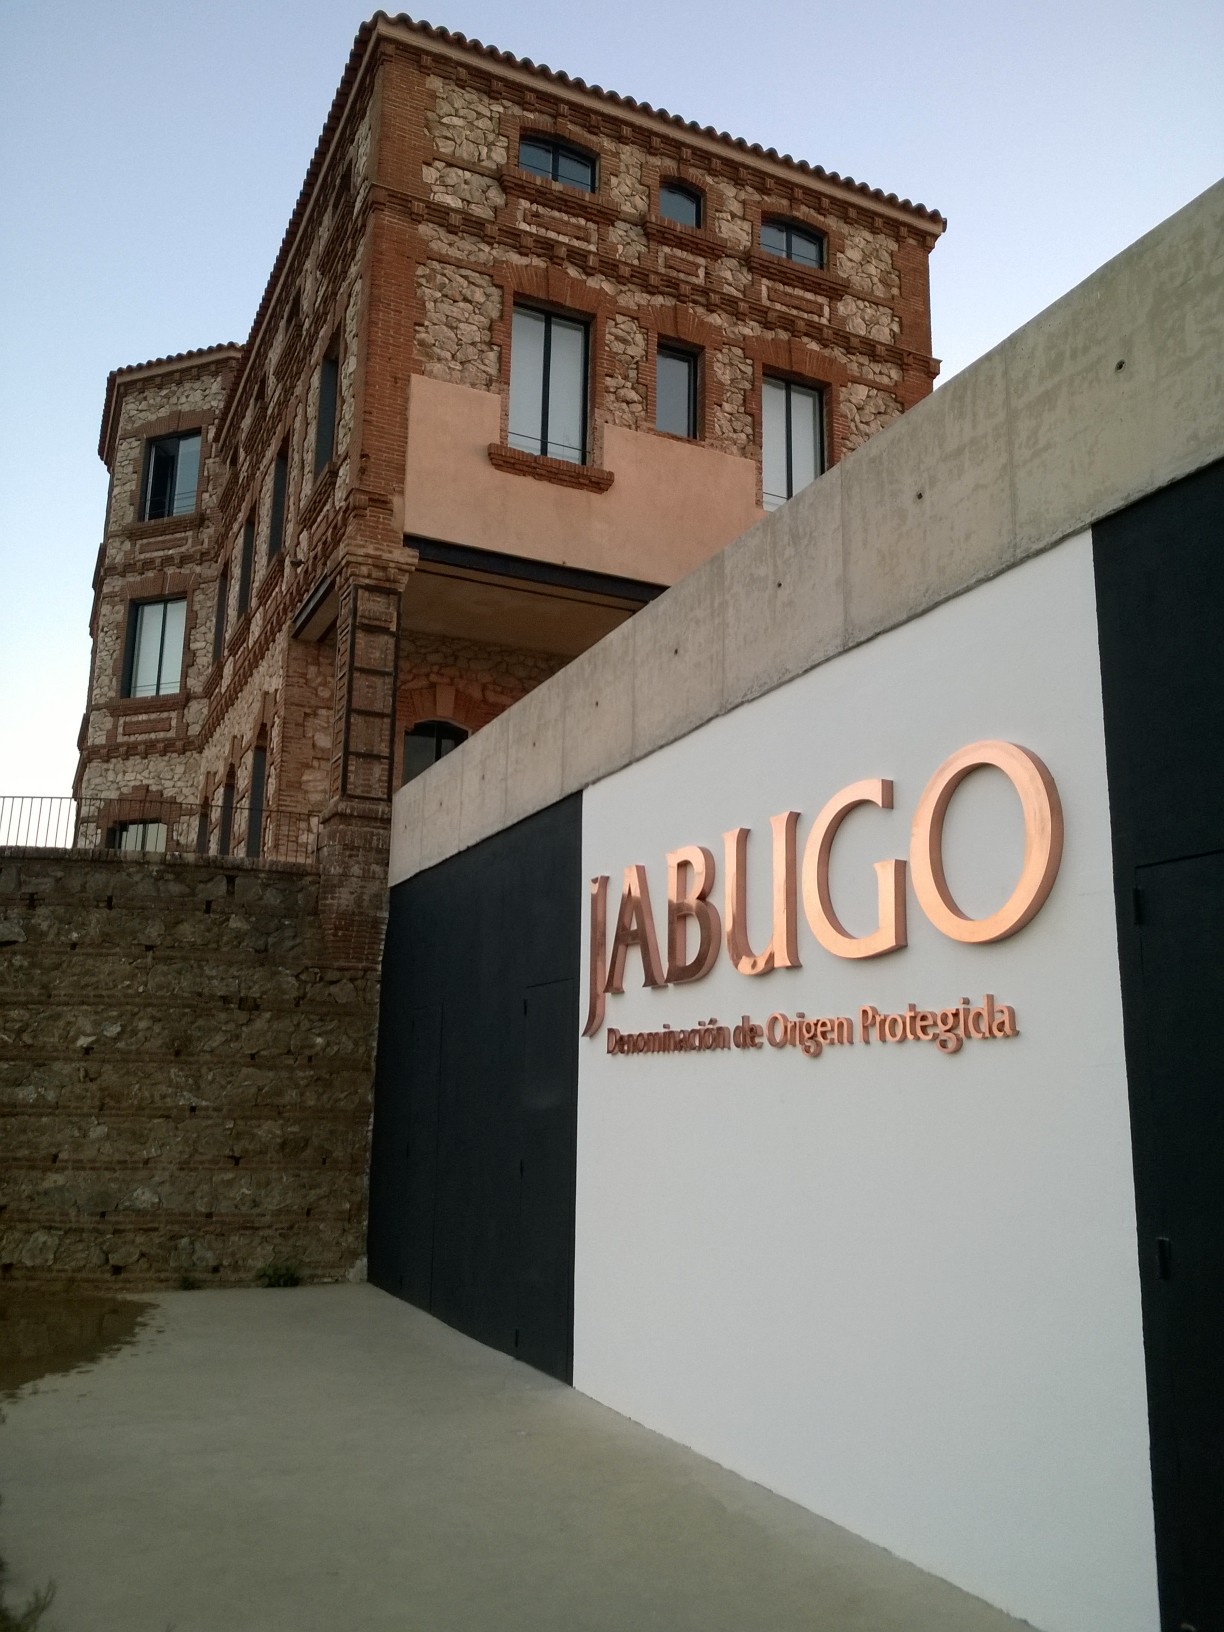 El IX Congreso de Origen España se Inaugura este Jueves en la DOP Jabugo